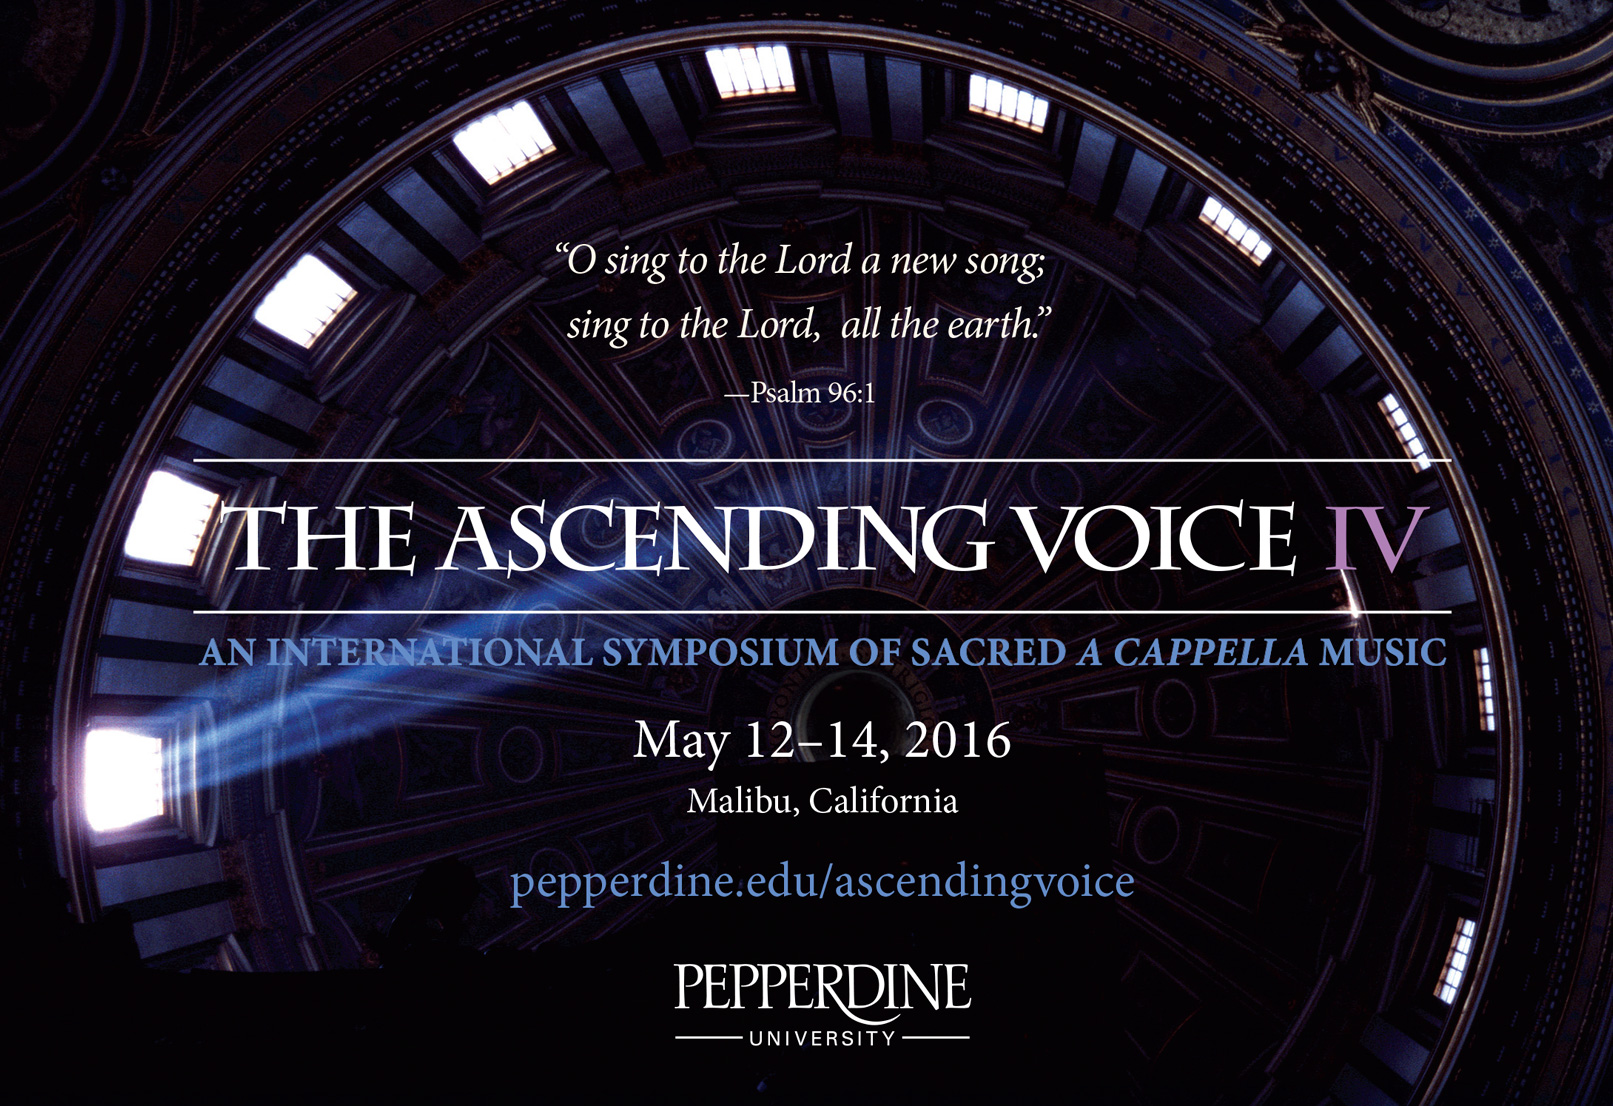 The Ascending Voice IV event logo - Pepperdine University